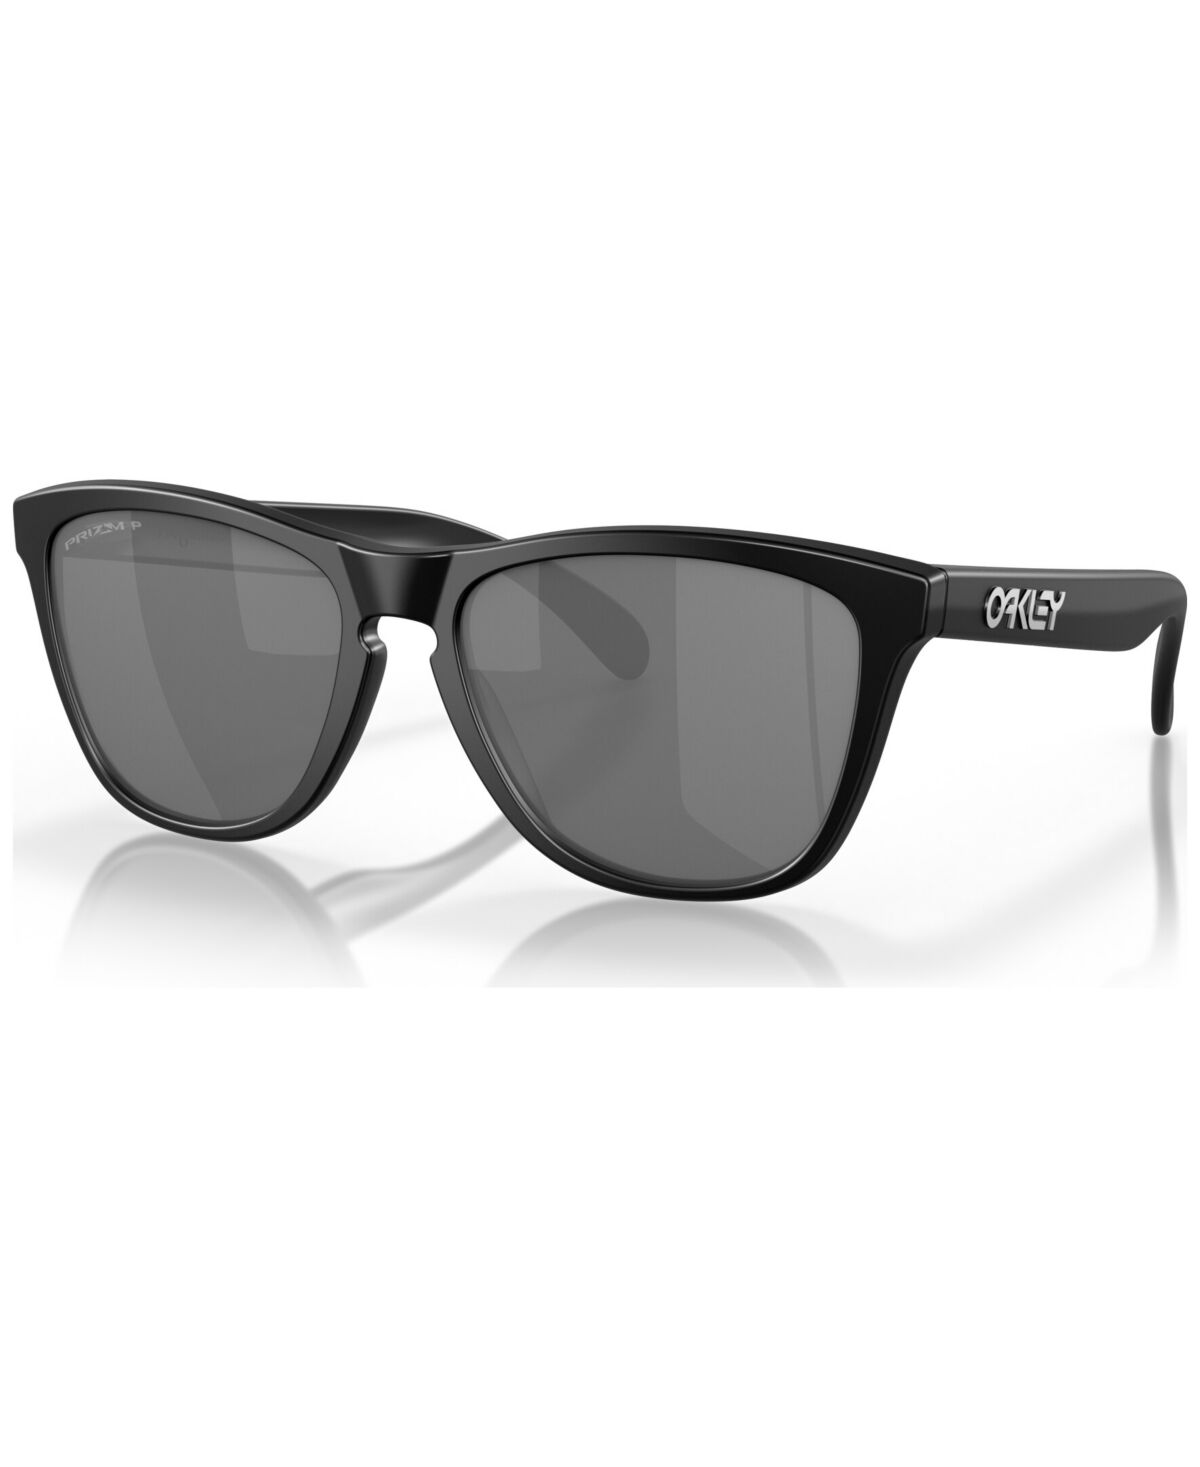 Oakley Men's Low Bridge Fit Polarized Sunglasses, OO9245 Frogskins 54 - Black